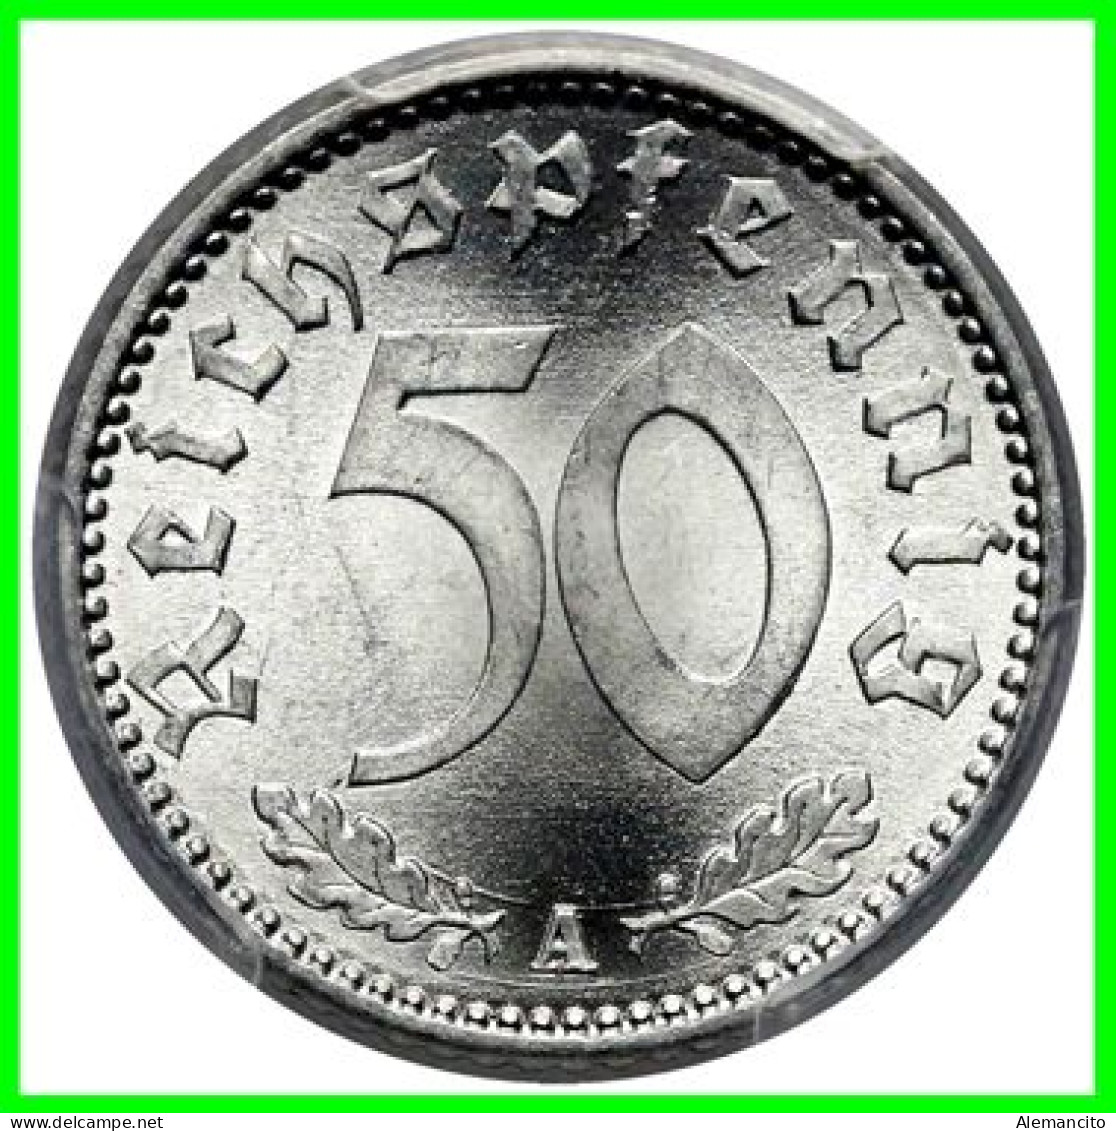 GERMANY - ALEMANIA DEUTFCHES REICH SERIE DE 5 MONEDAS DE 0.50 REICHSPFENNIG AÑO 1943 – KM 96 ( SERIE COMPLETA 5 CECAS ) - 50 Reichspfennig